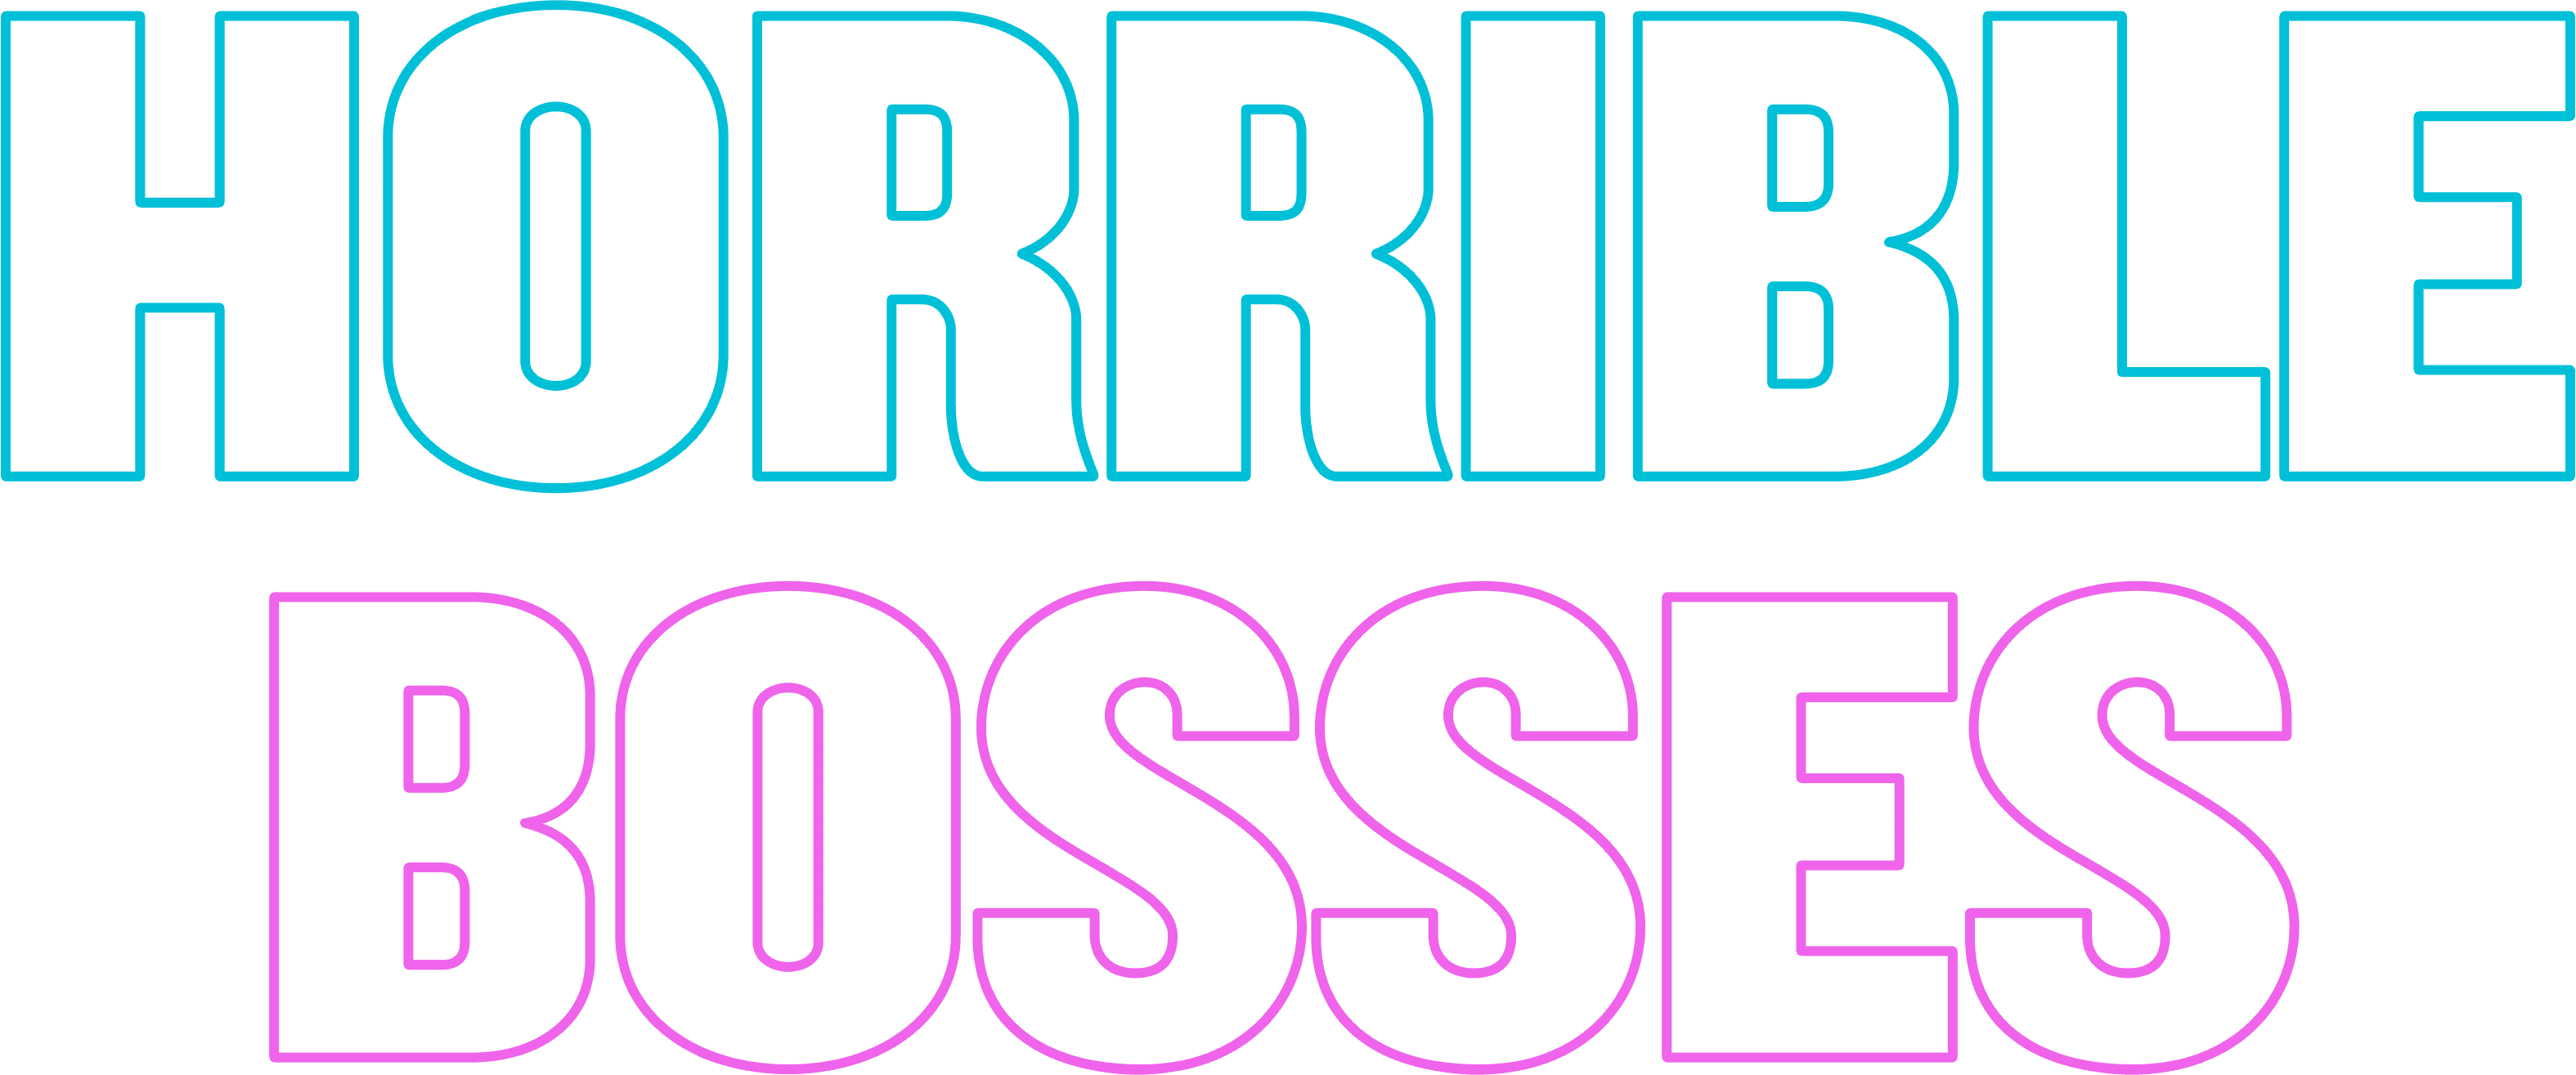 Horrible Bosses logo